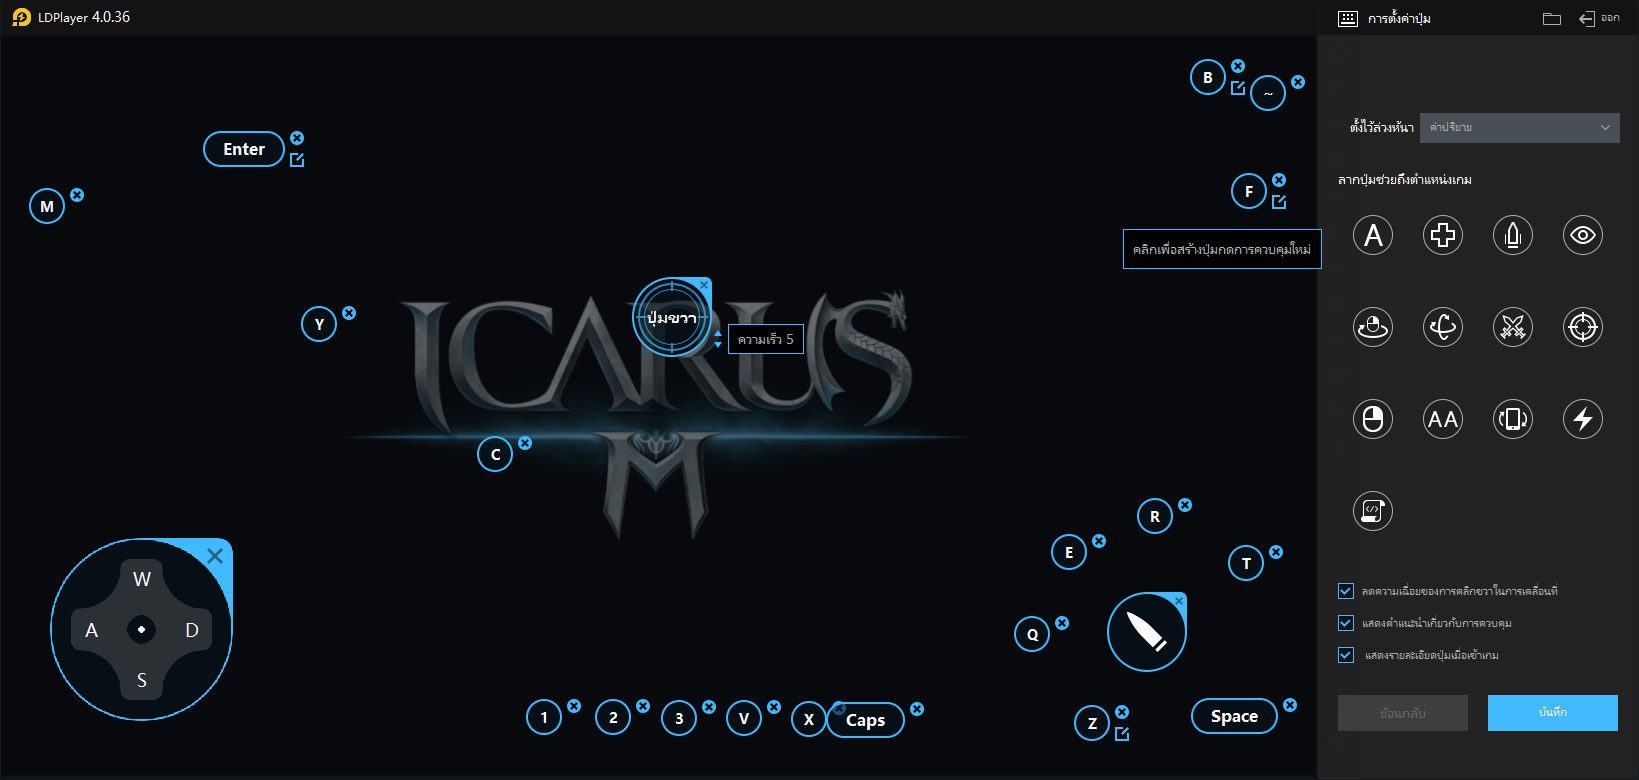 วิธีเล่น Icarus M: Riders of Icarus ด้วยโปรแกรมจำลองบน PC